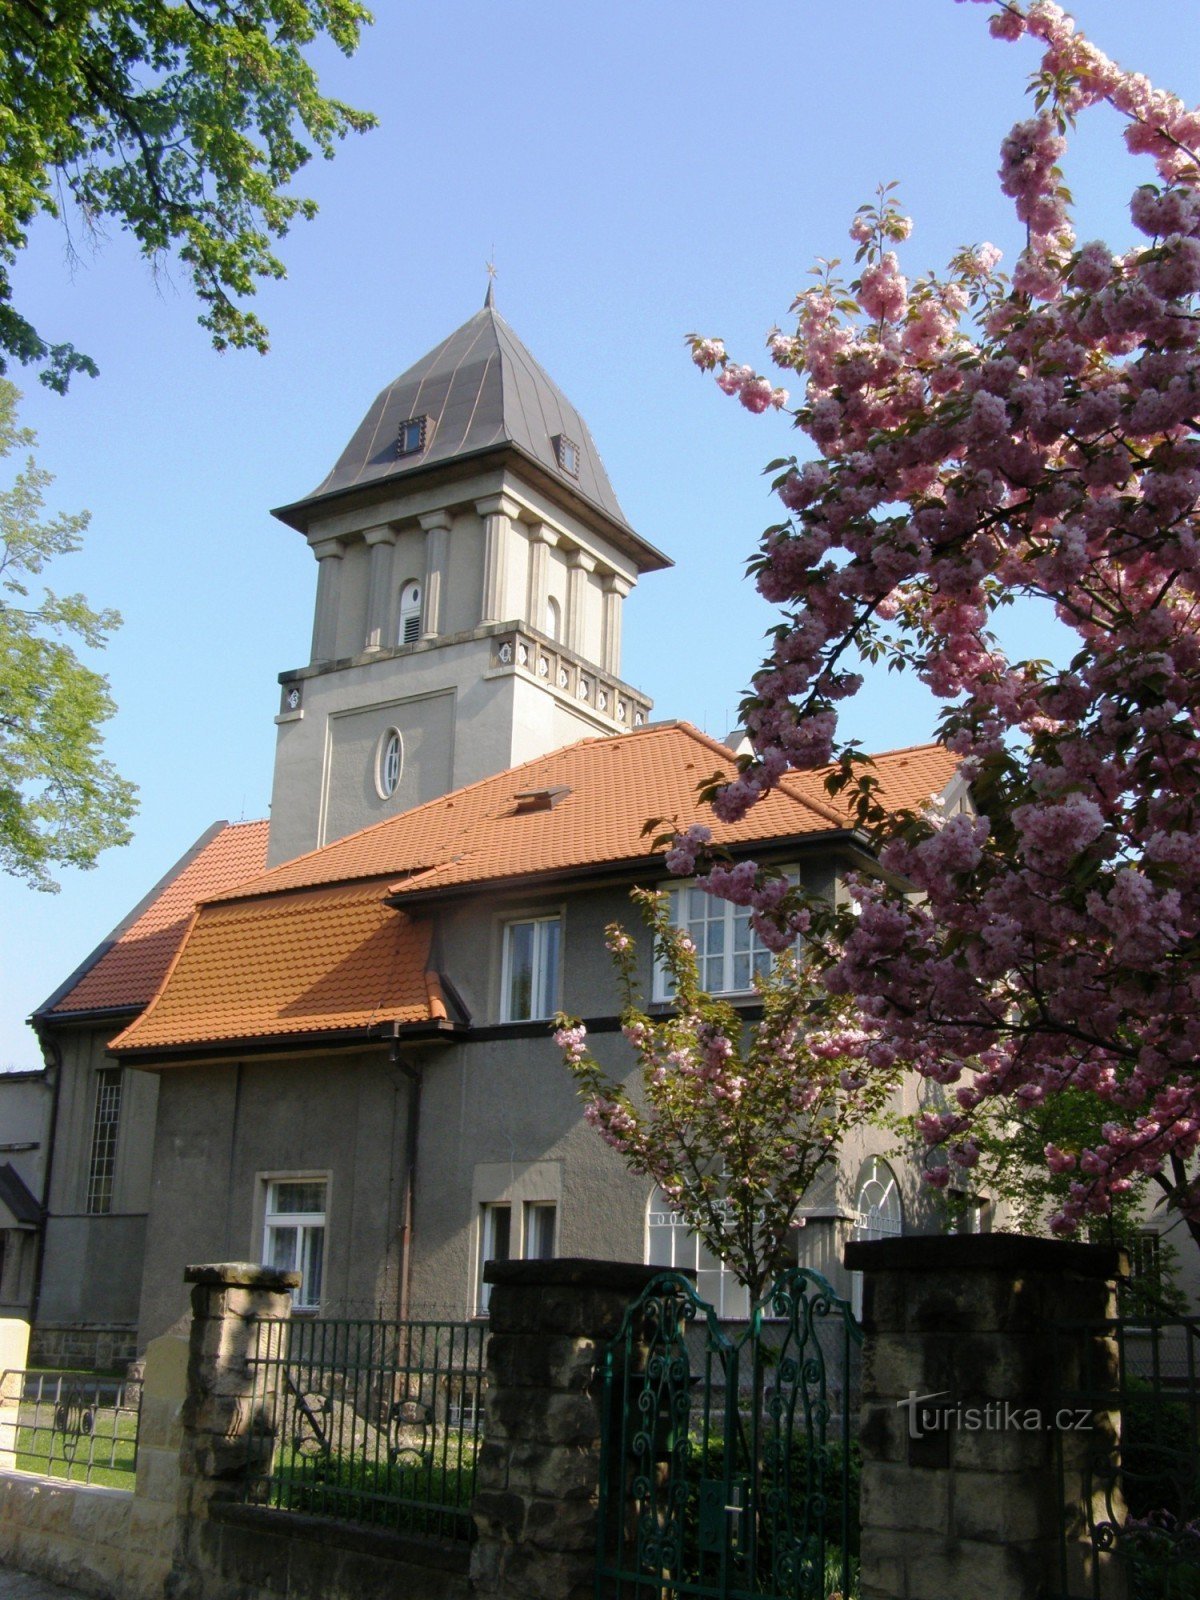 Crkva Češke braće u Hradec Králové